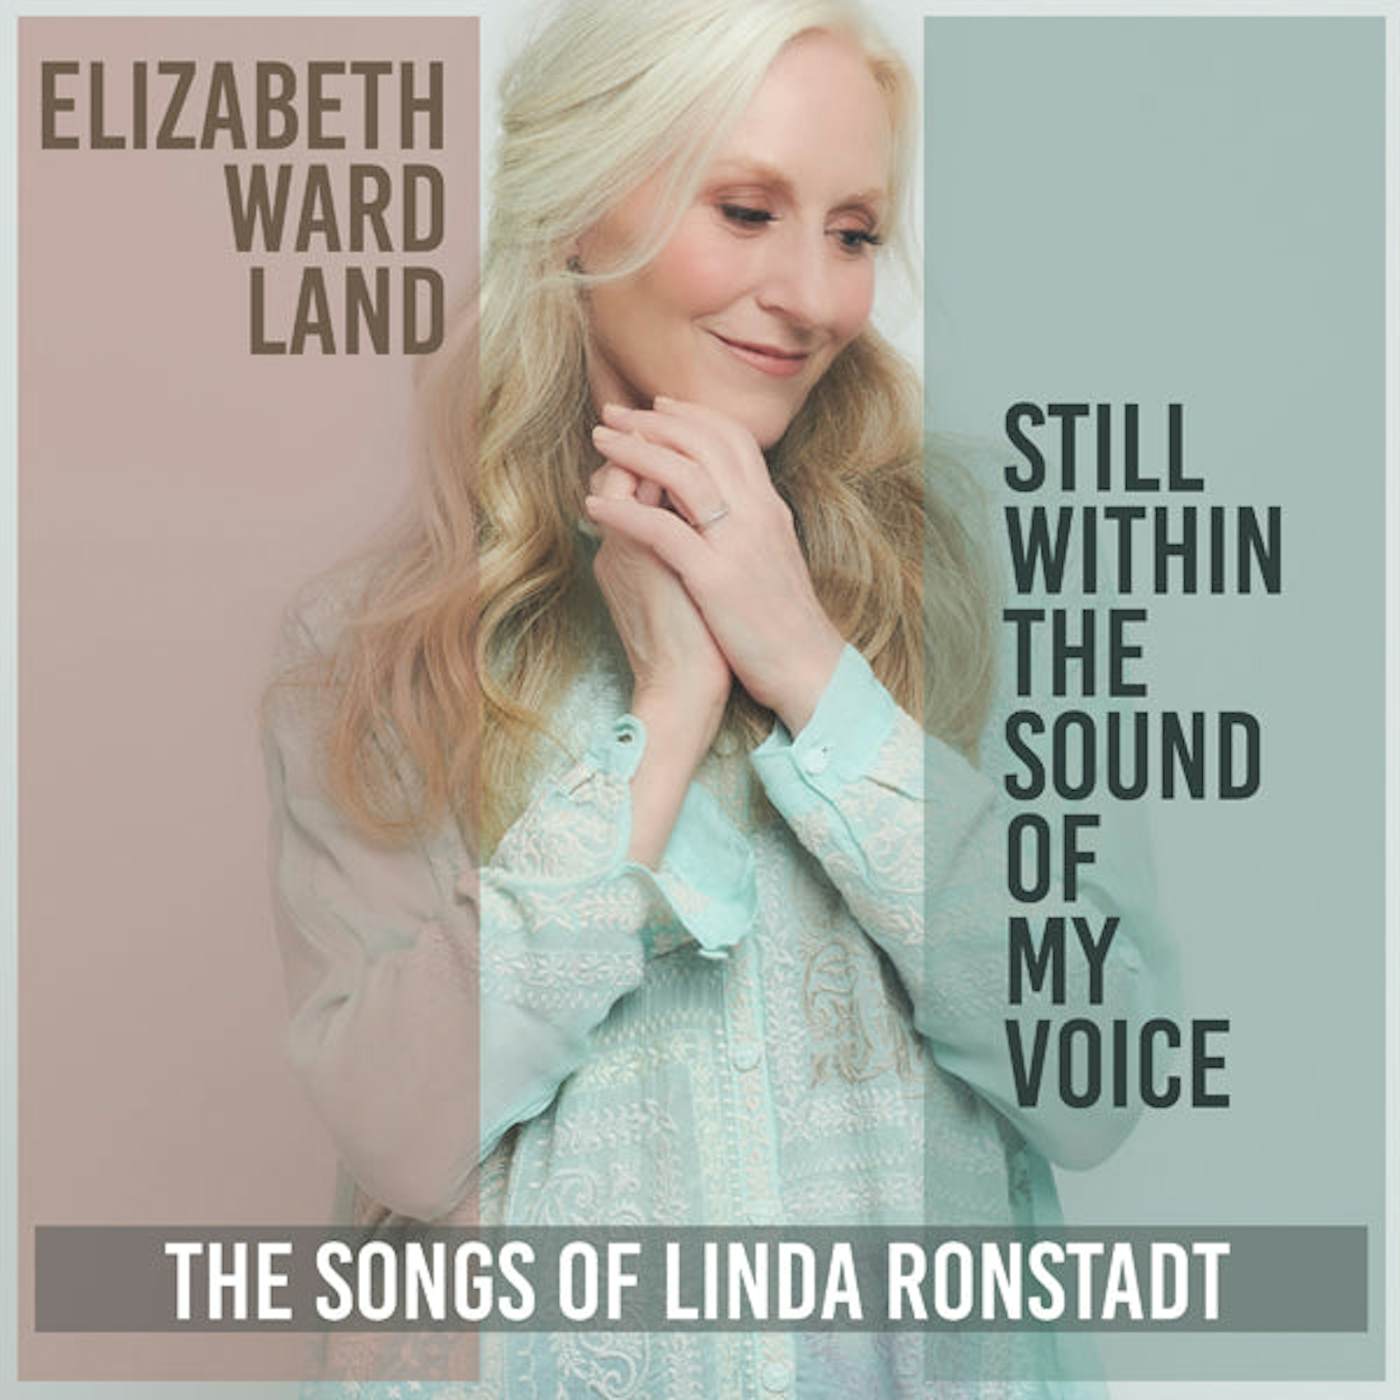 Elizabeth Ward Land LP - Still Within The Sound Of My Voice (Vinyl)